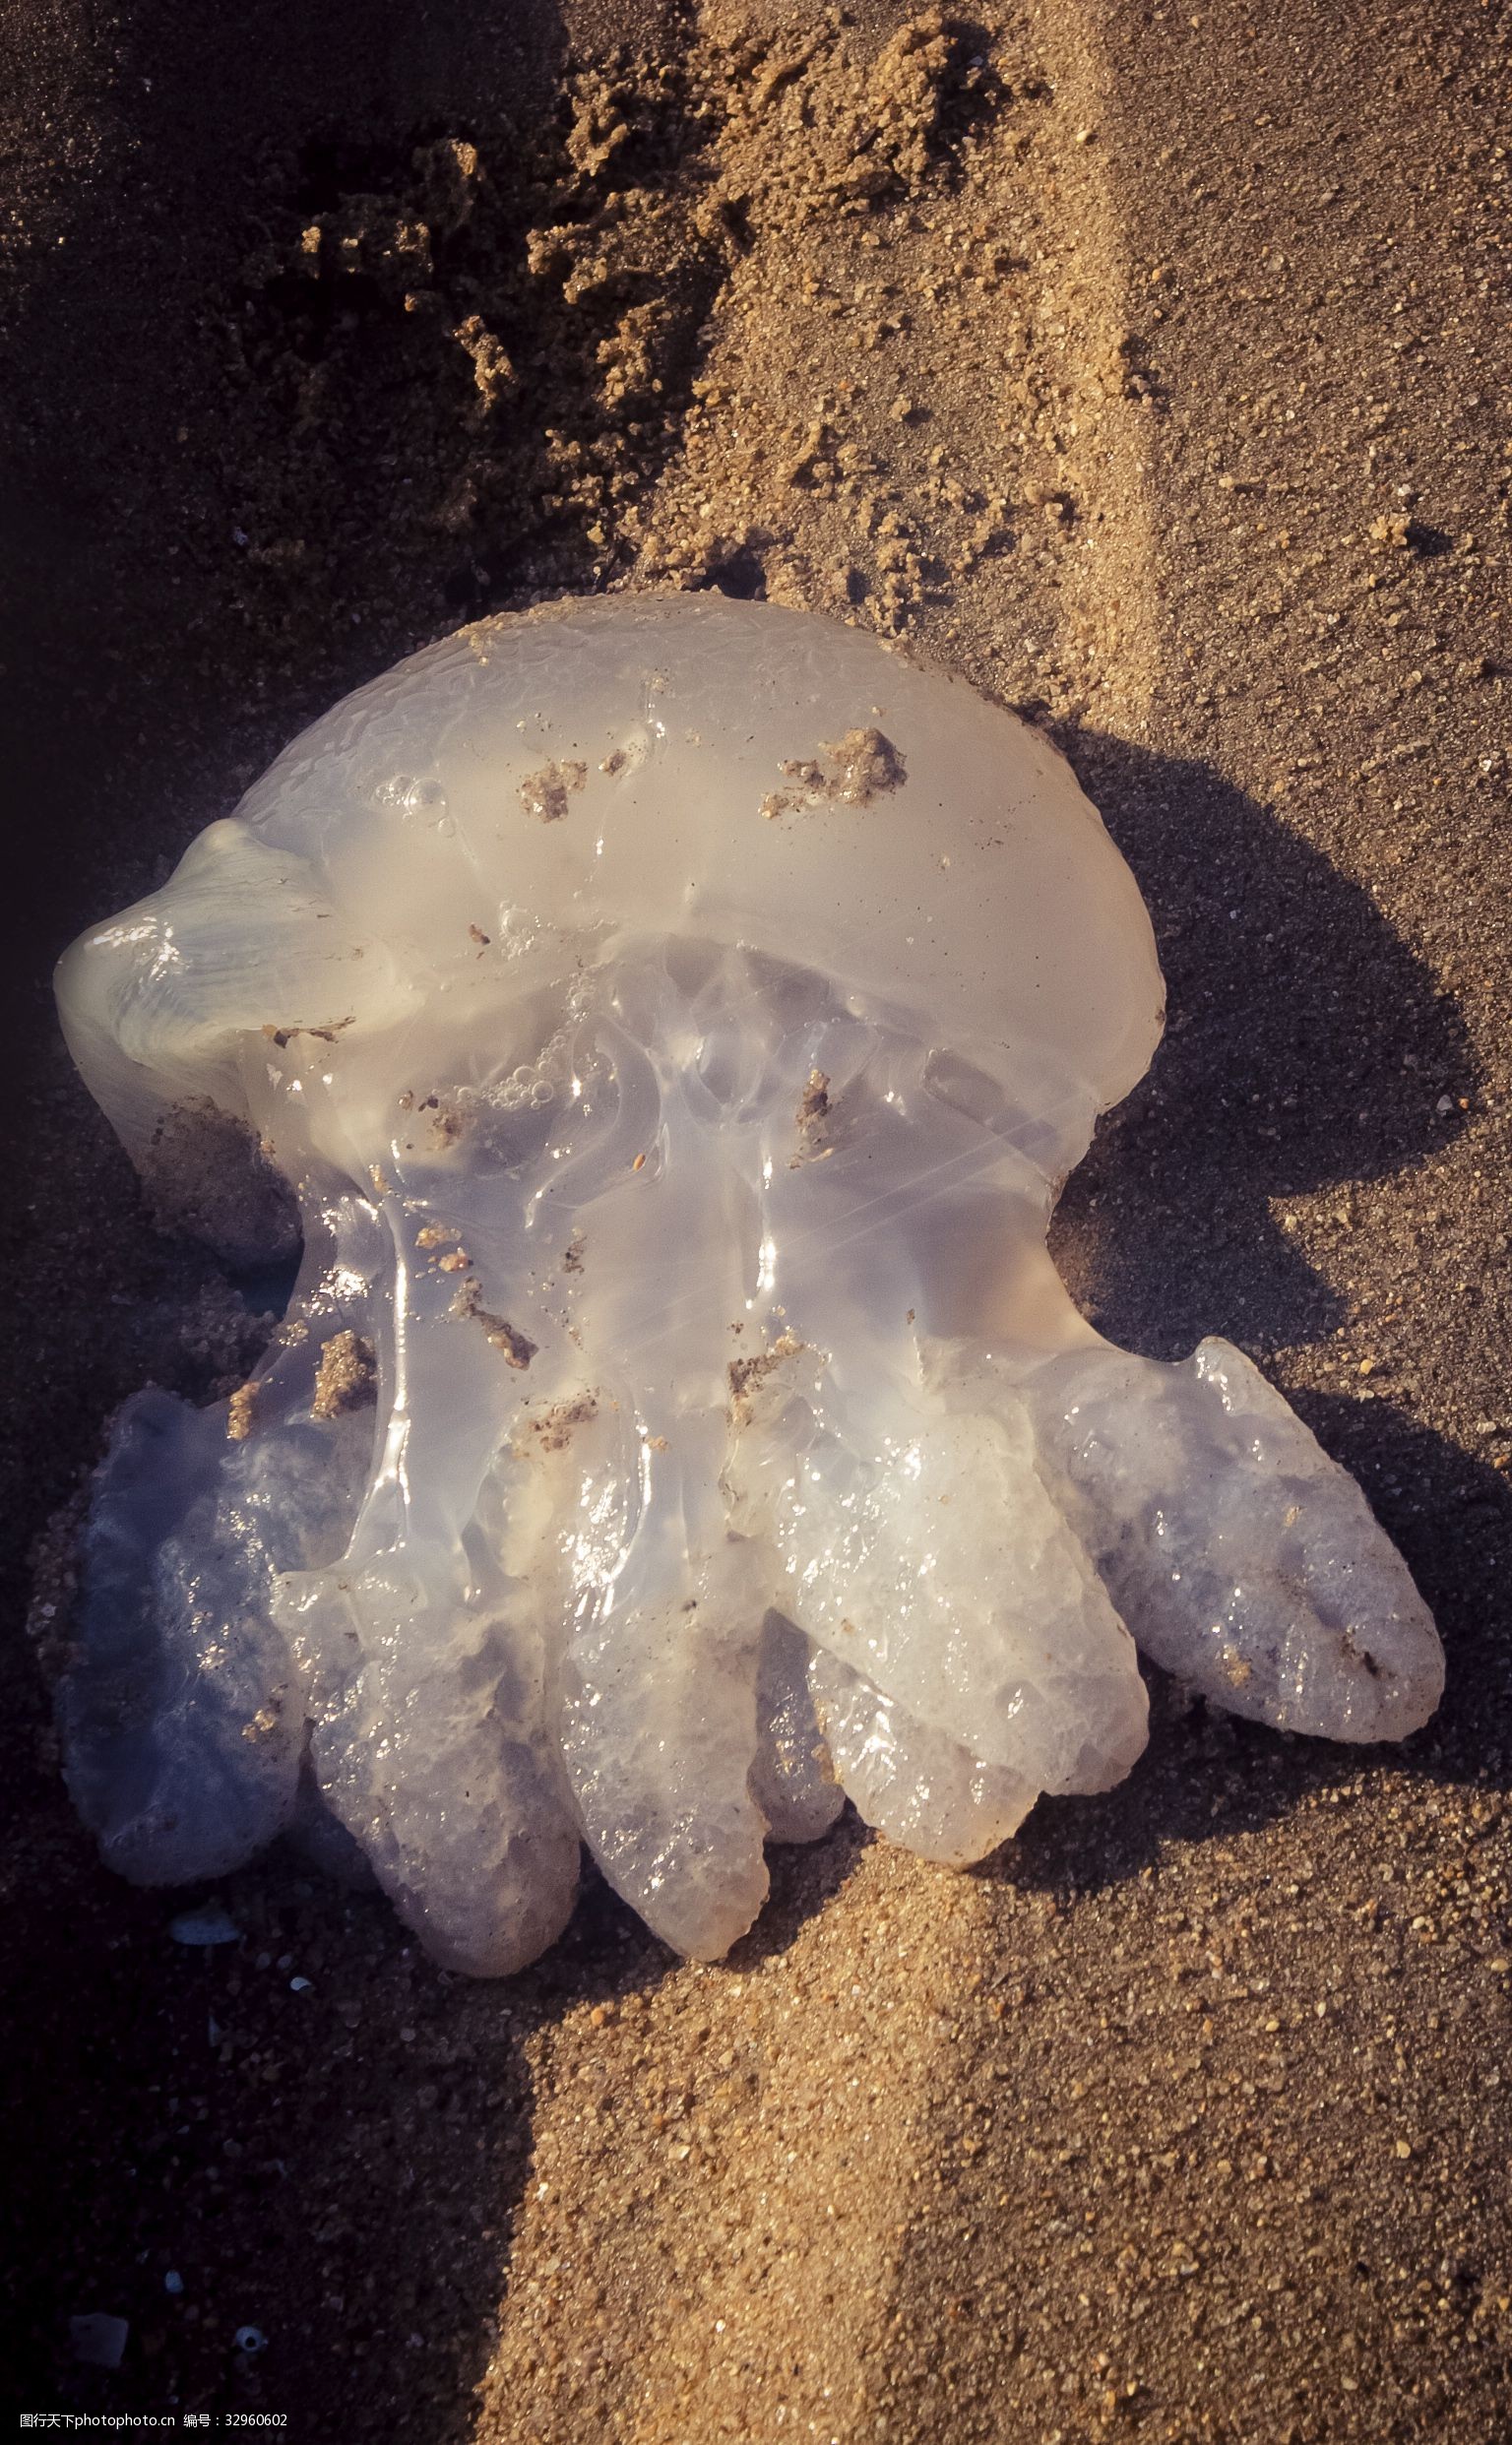 关键词:干涸的海床上留下的水母 干涸 海床 水母 透明 白色 动物 晶莹